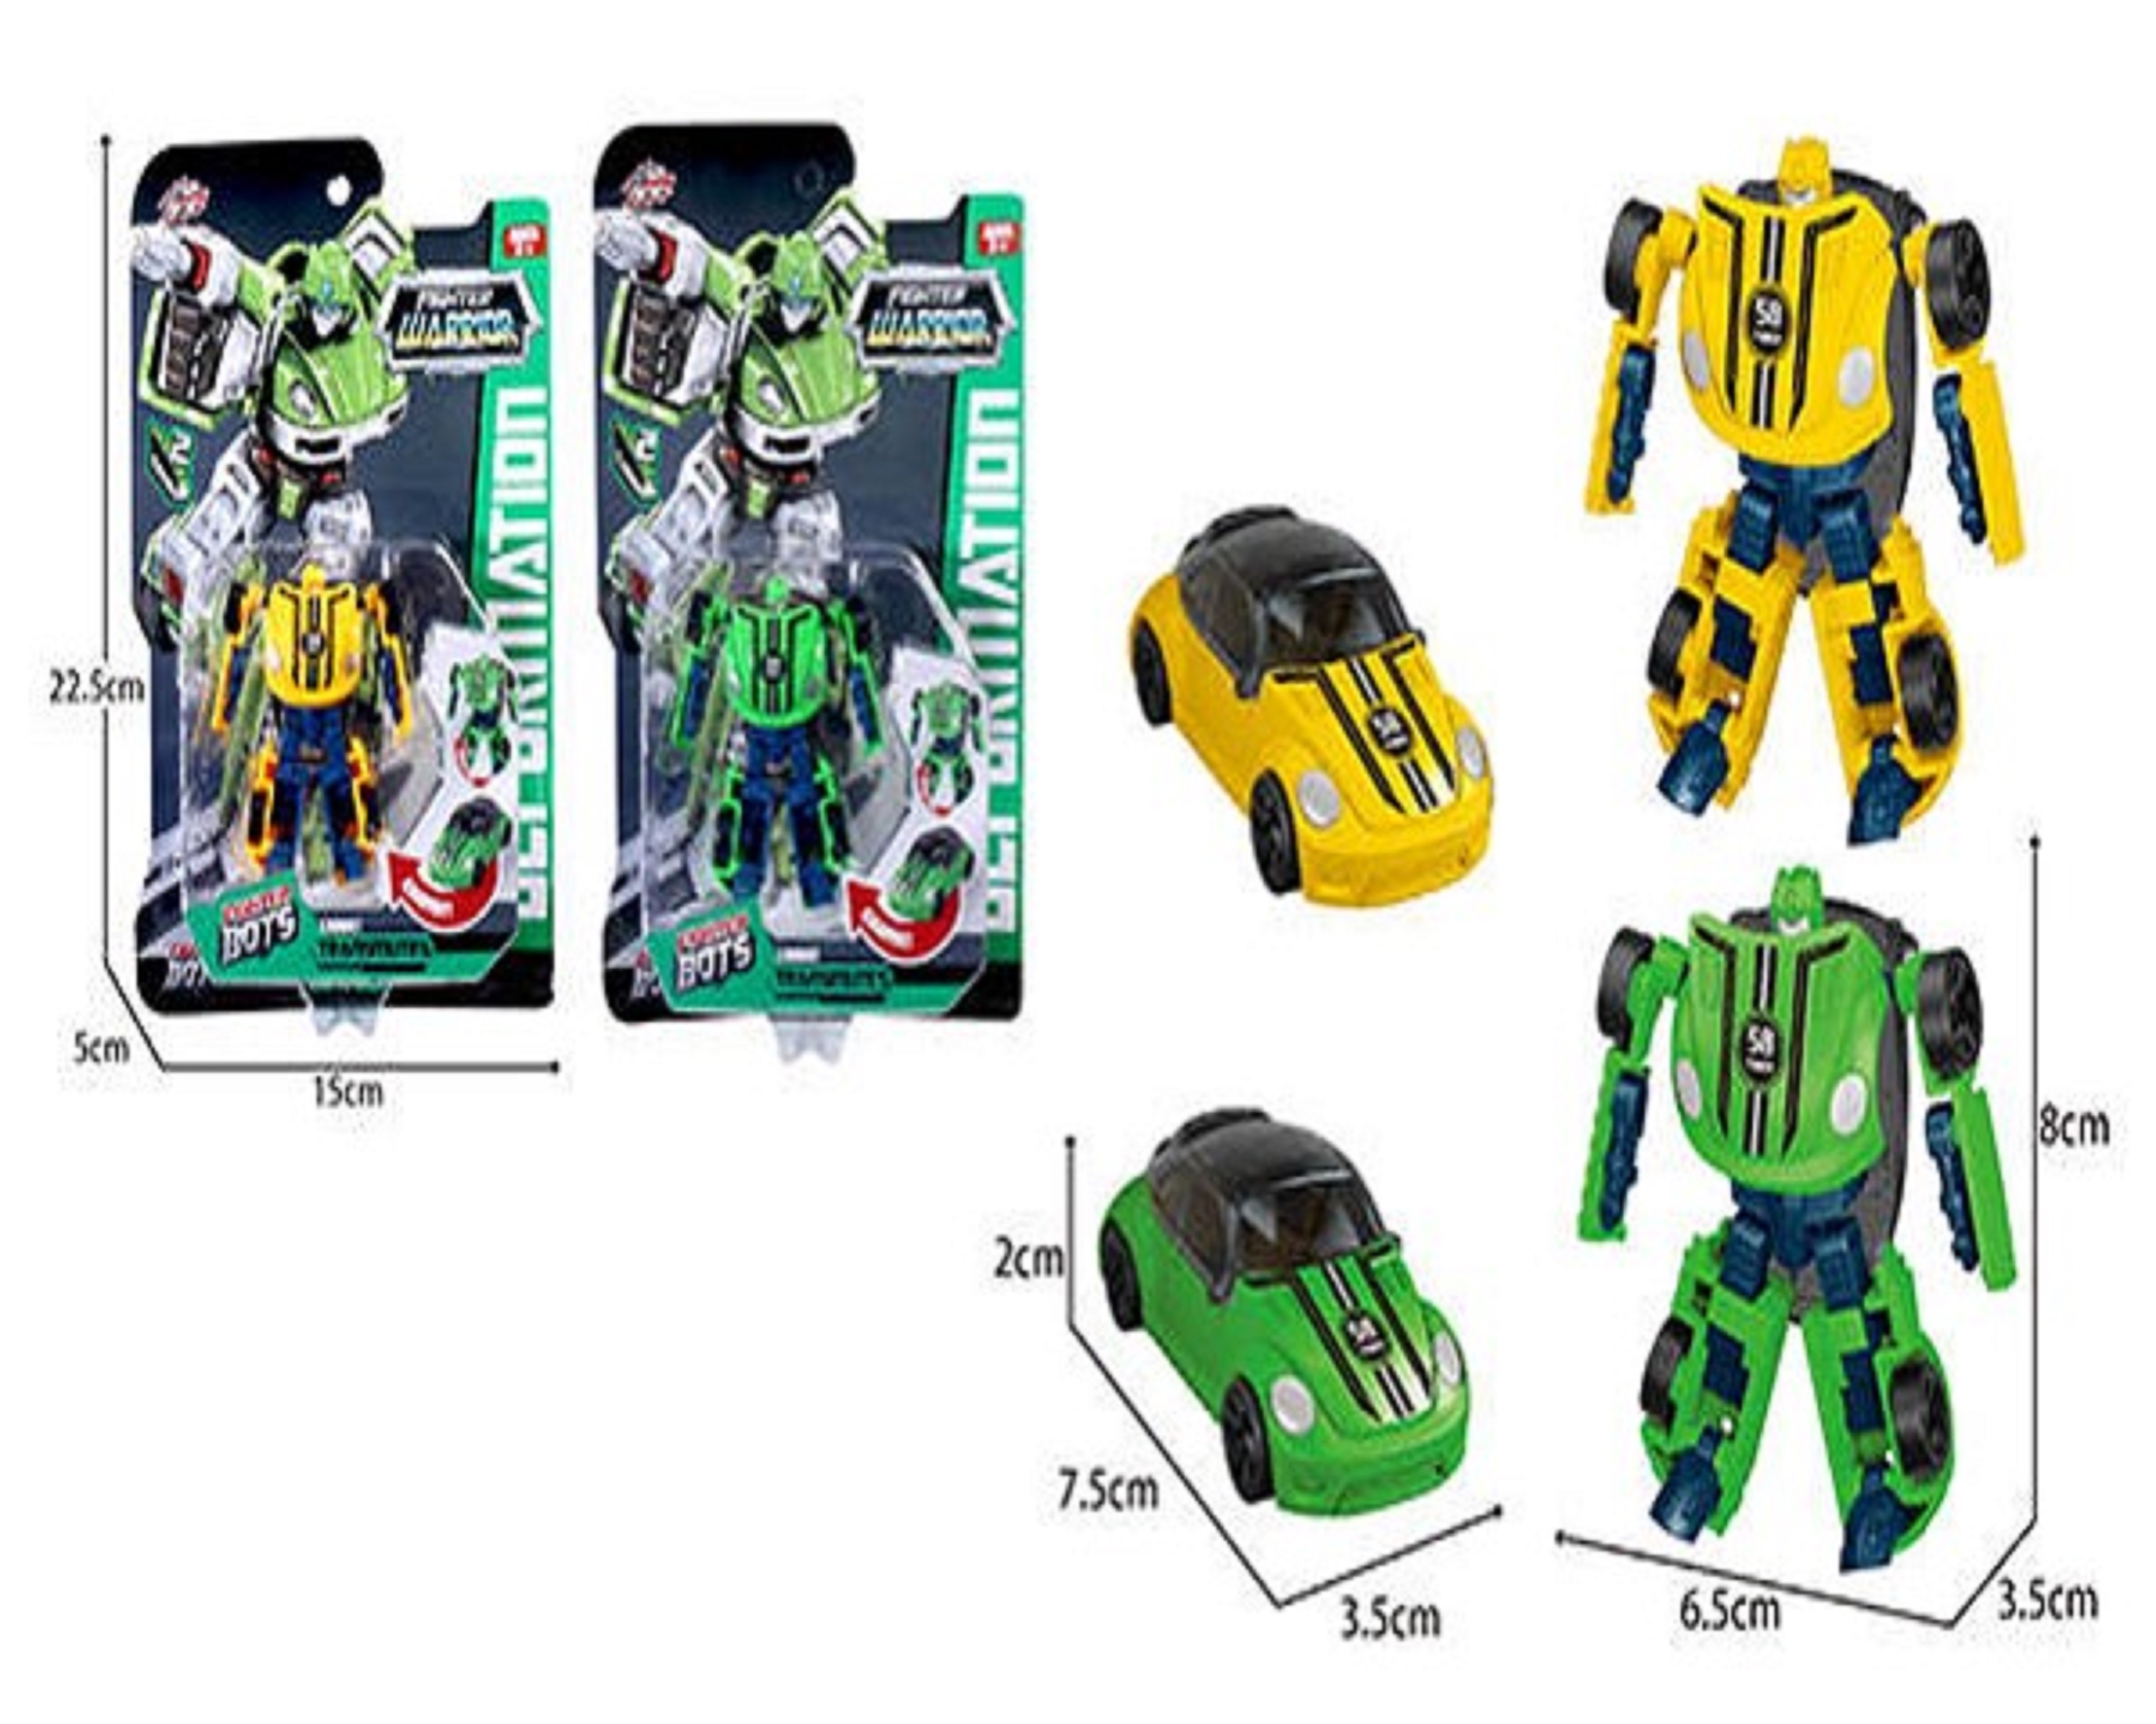 Робот-трансформер 1toy Transcar mini в ассортименте 2 вида желтый и зеленый